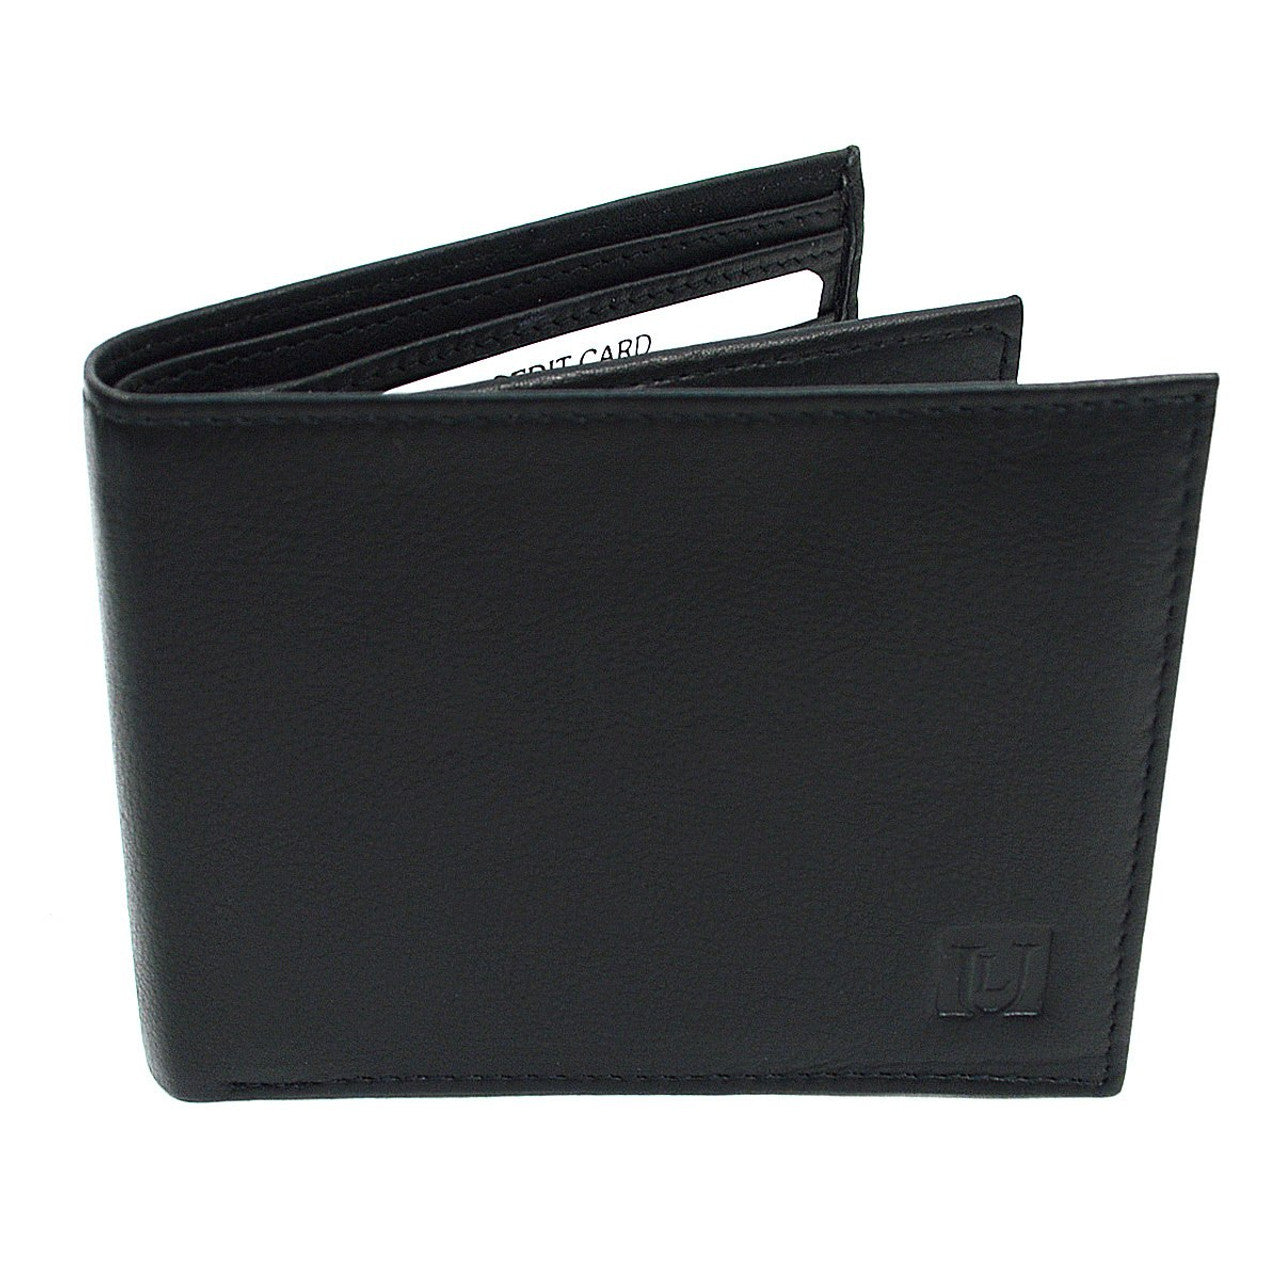 Two-leaf RFID Wallet - Black